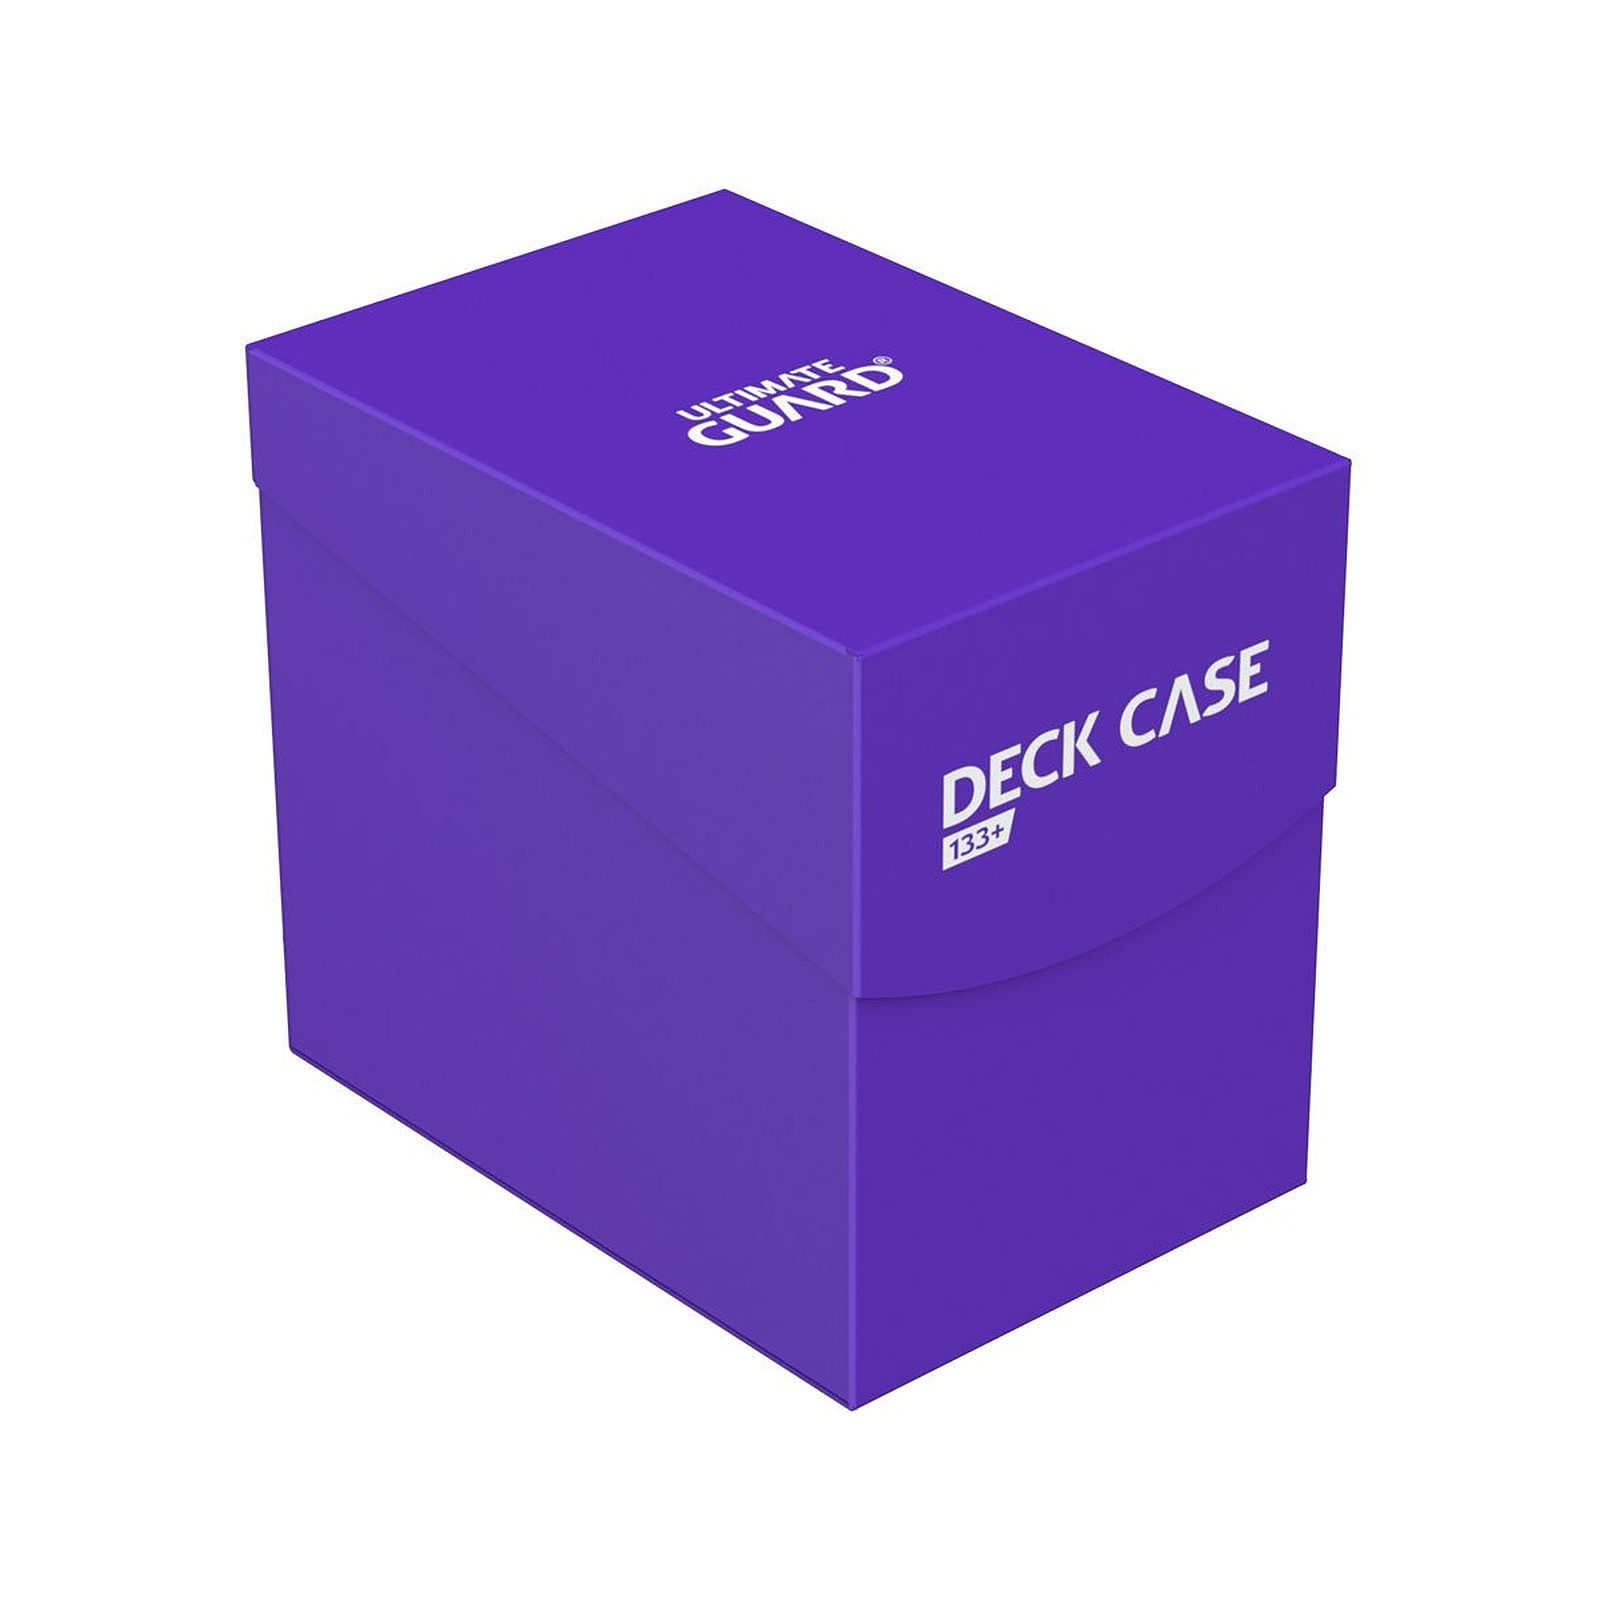 Ultimate Guard - Boite pour cartes Deck Case 133+ taille standard Violet - Accessoire jeux Ultimate Guard